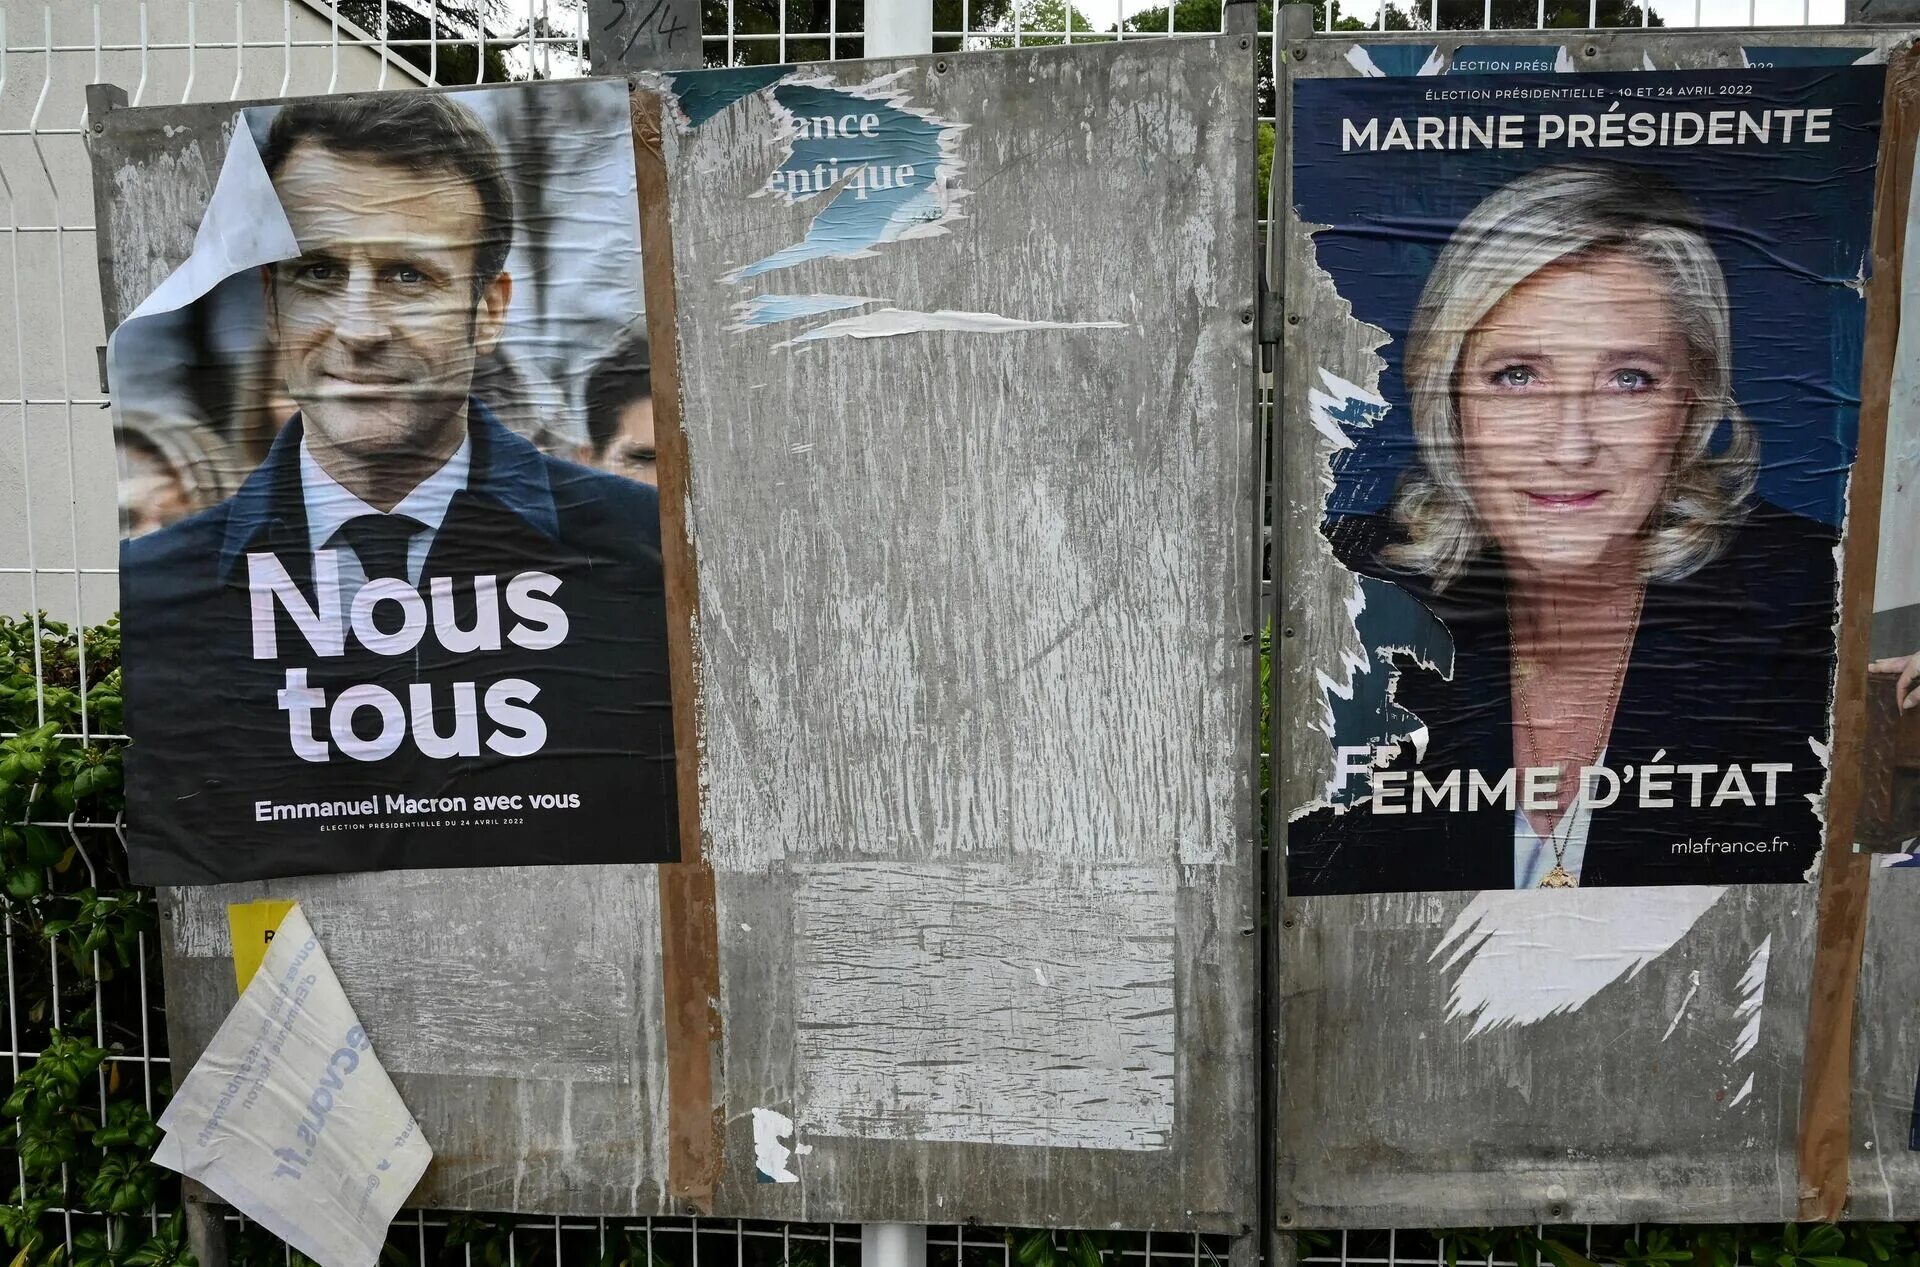 Год выборов во франции. Выборы президента Франции 2022. Президентские выборы во Франции. Итоги выборов во Франции 2022. Президентские выборы во Франции (2022).